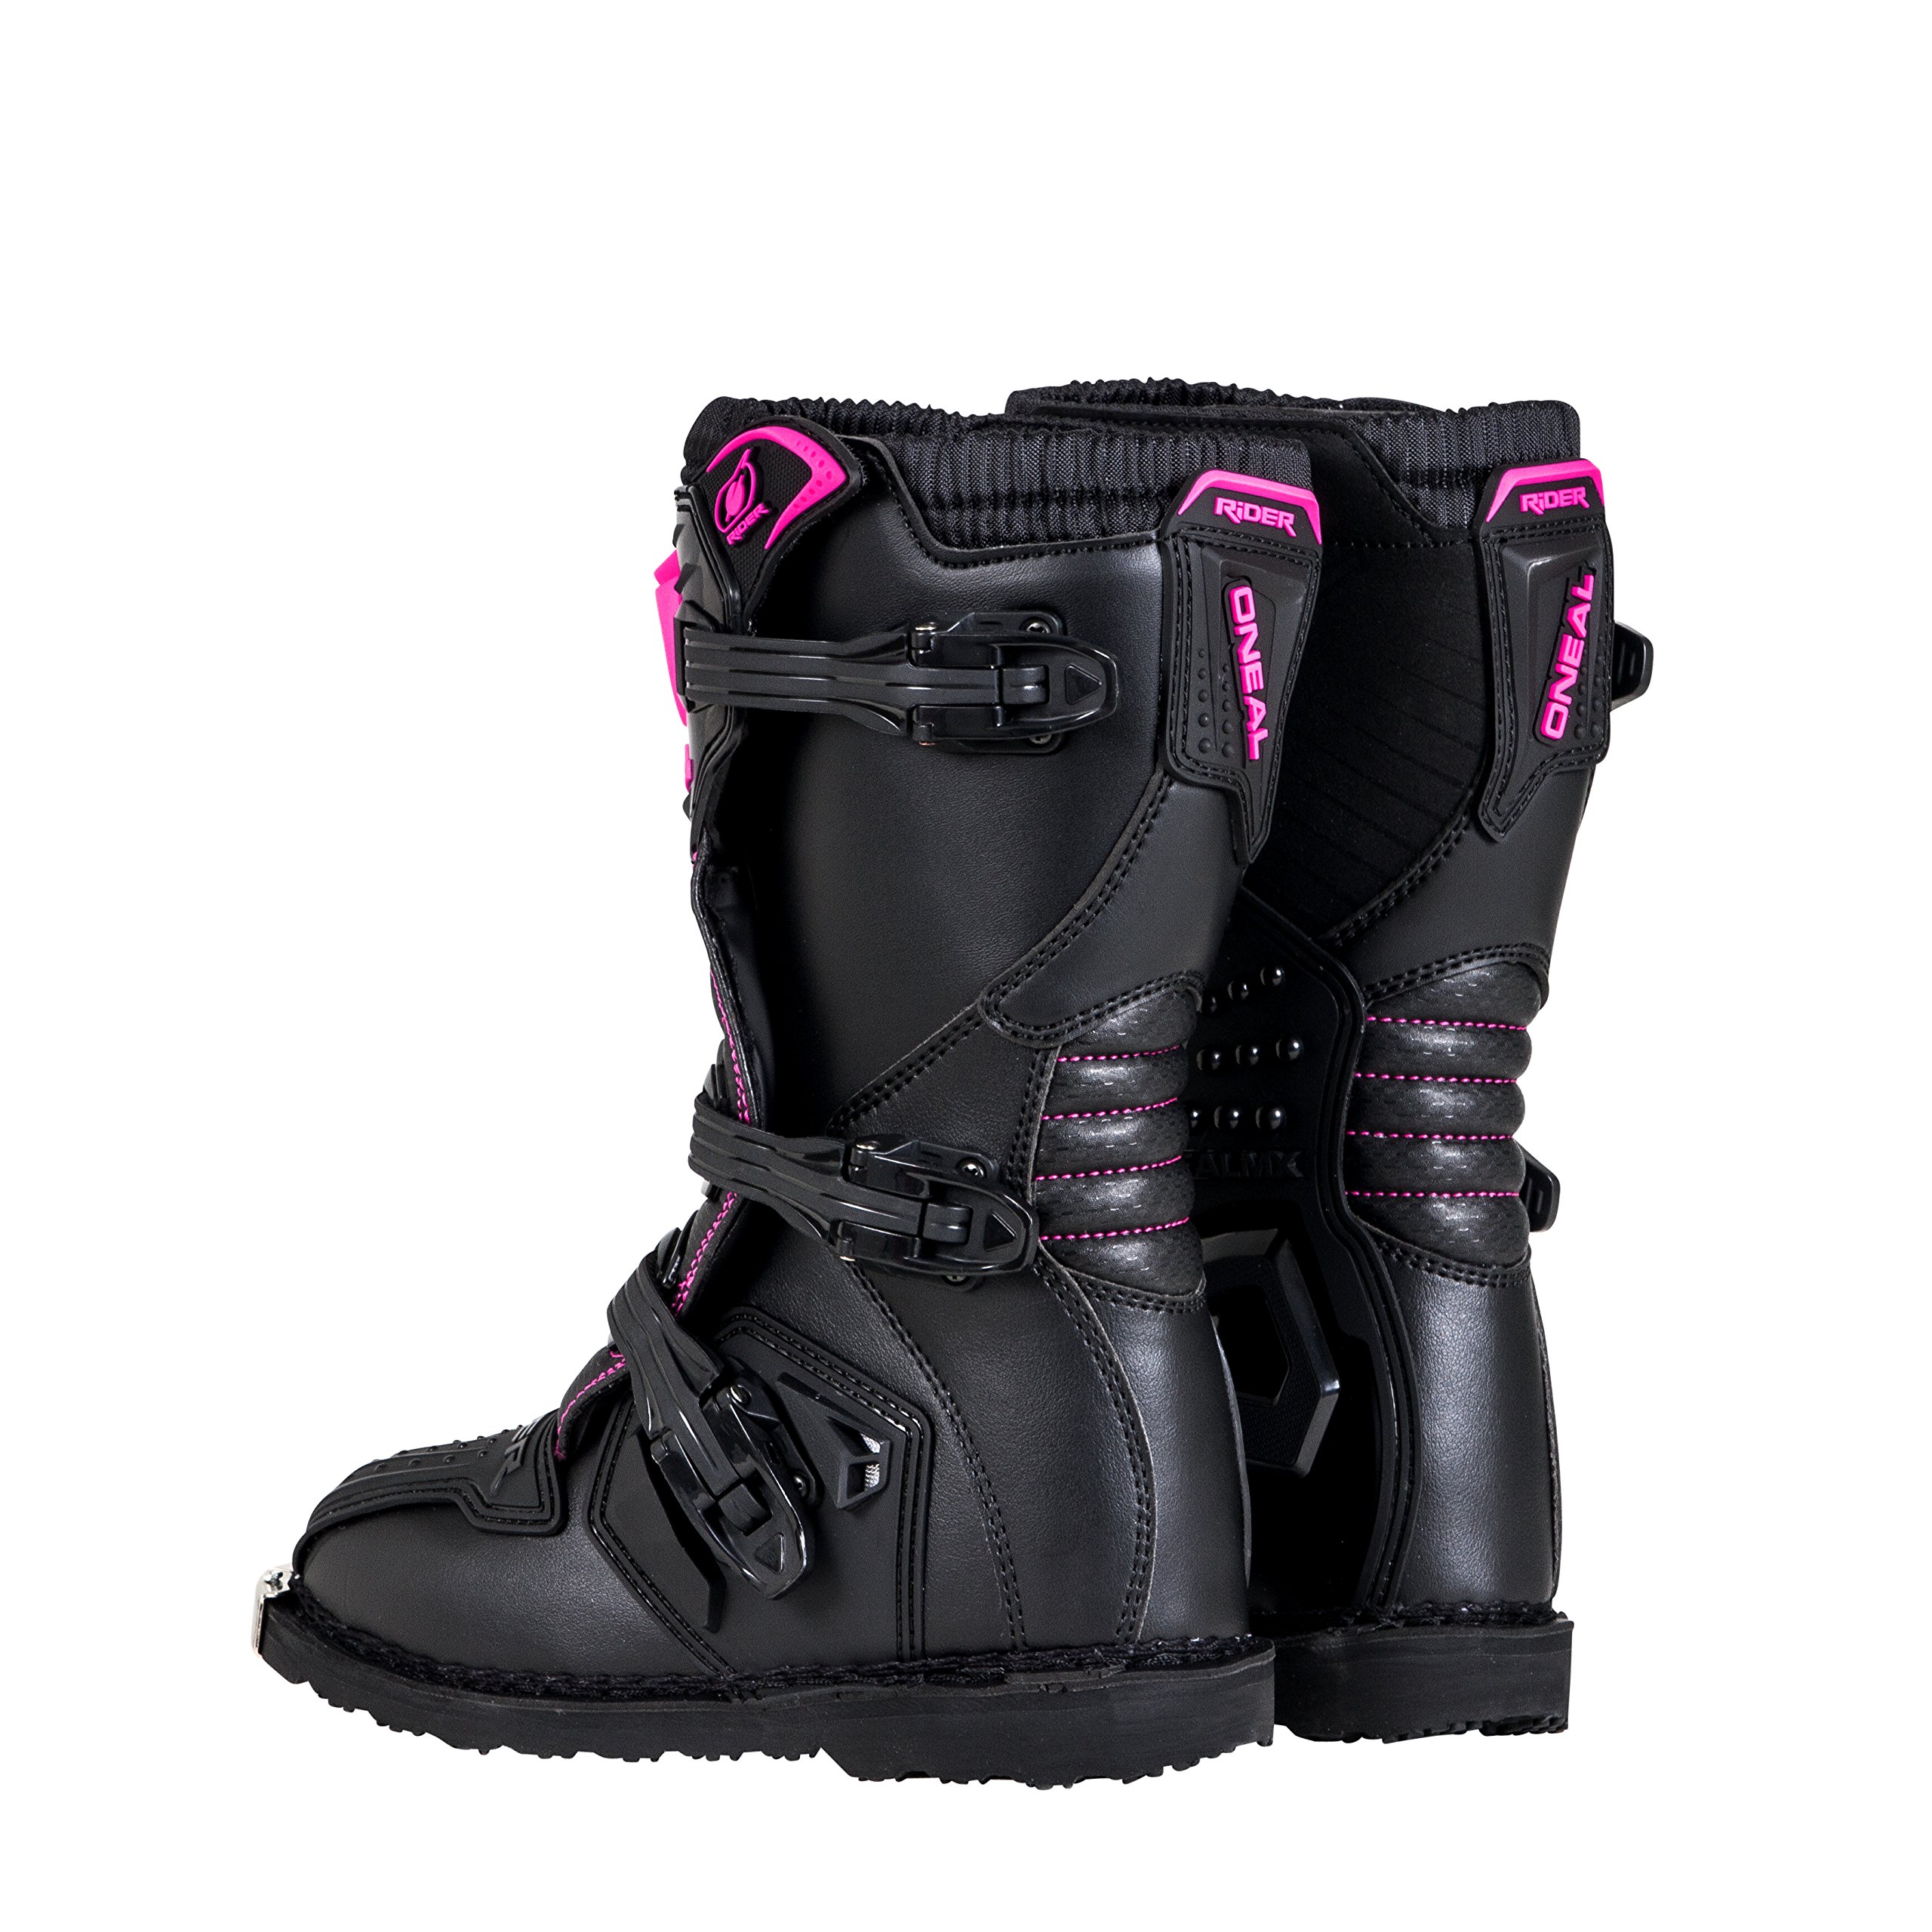 O'Neal Girls Rider Boot (Black/Pink, K12)